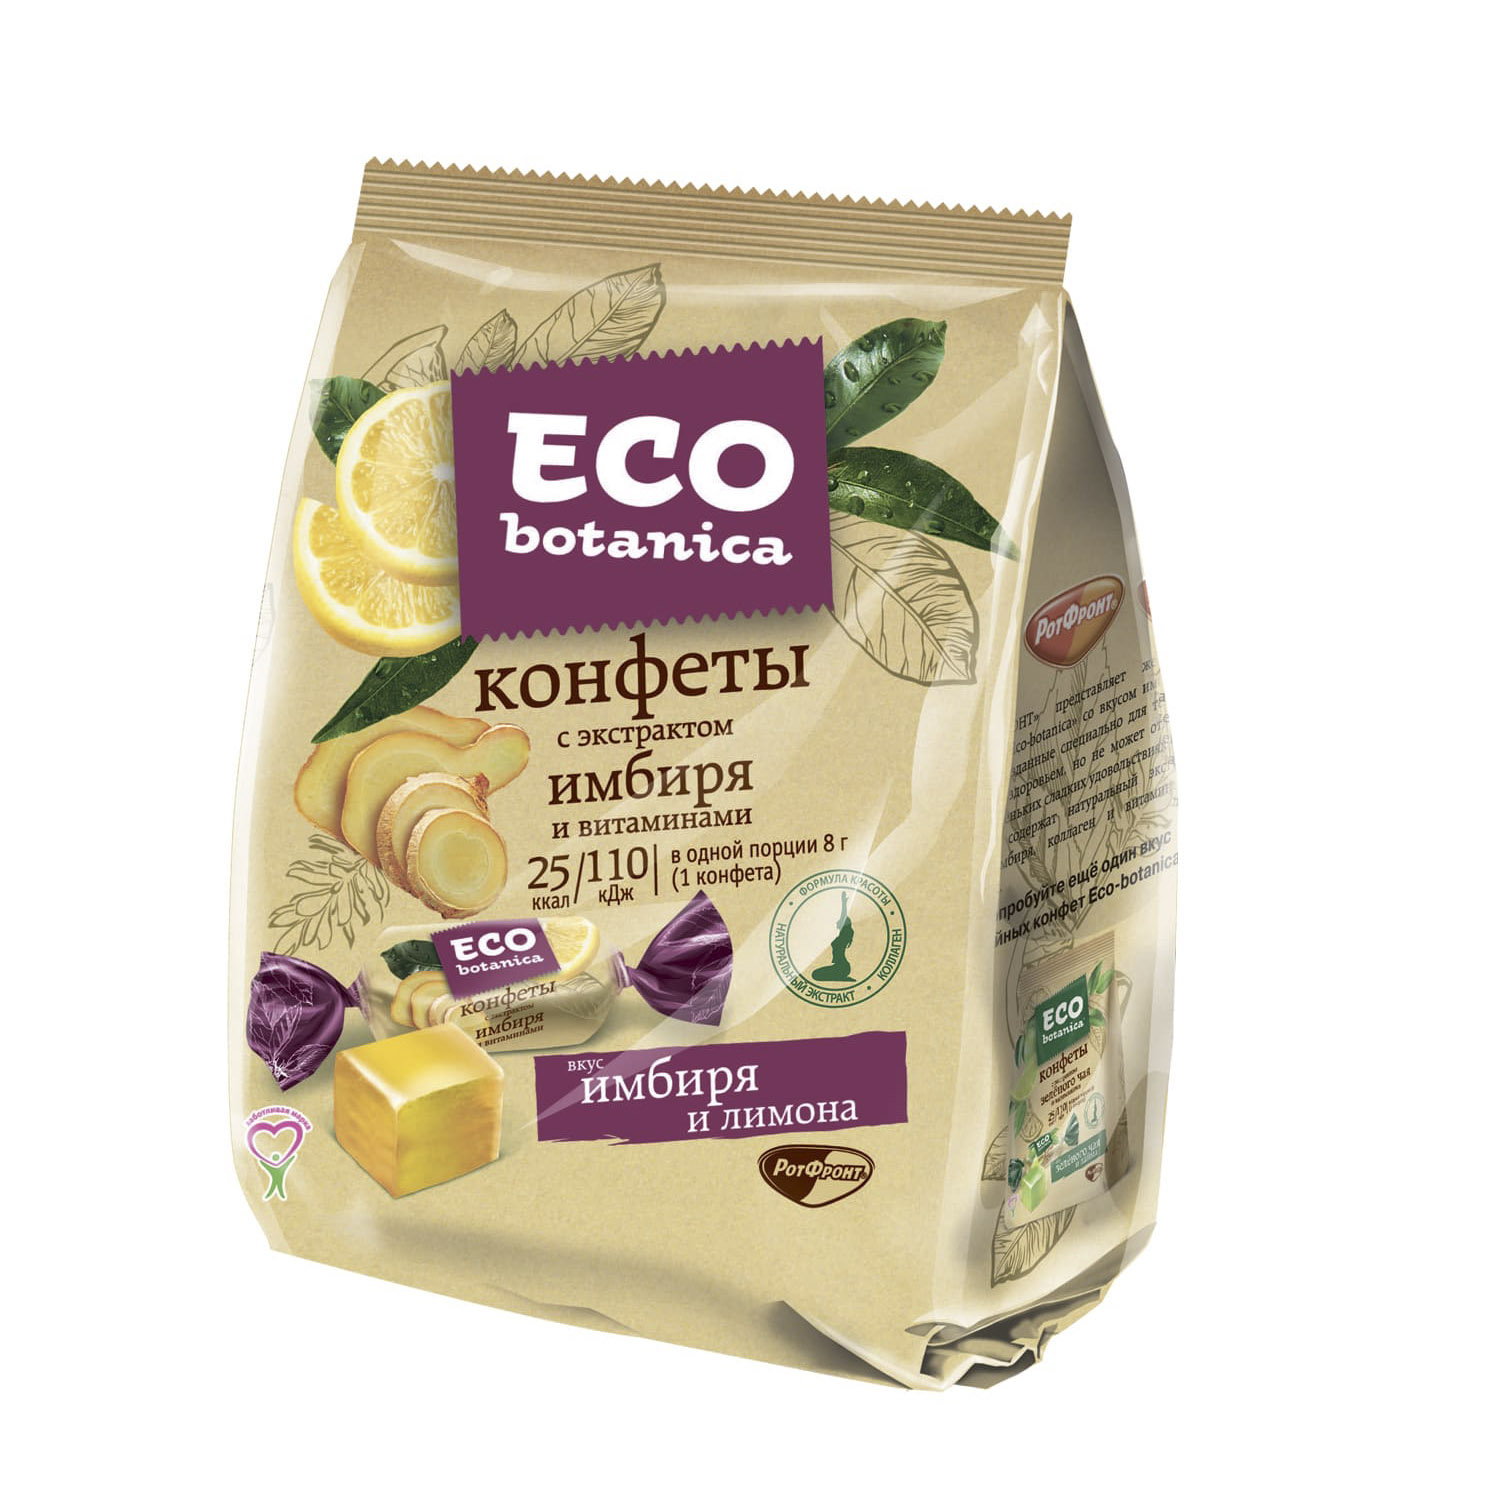 Конфеты Eco botanica с экстрактом имбиря и витаминами 200 г мармелад живые конфеты грейпфрут 170 гр